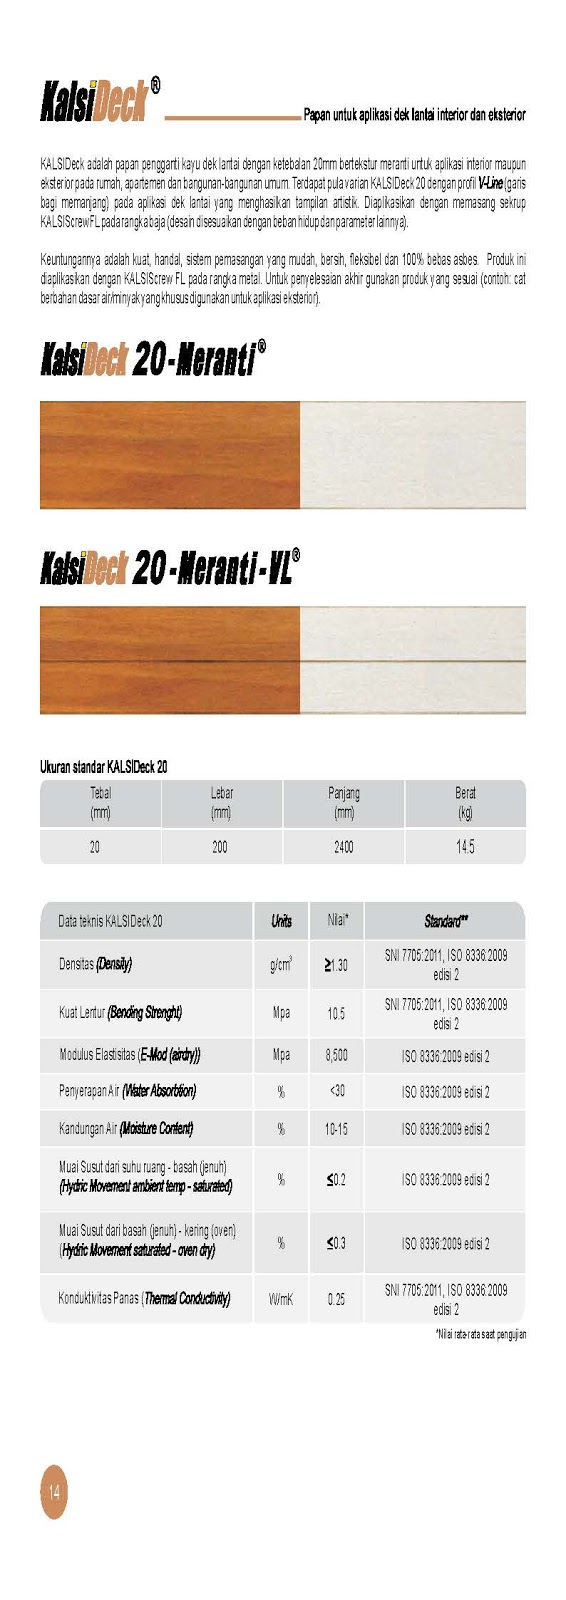 Brosur dan Spesifikasi KalsiPlank 9 - Cedar & Kalsiplank 